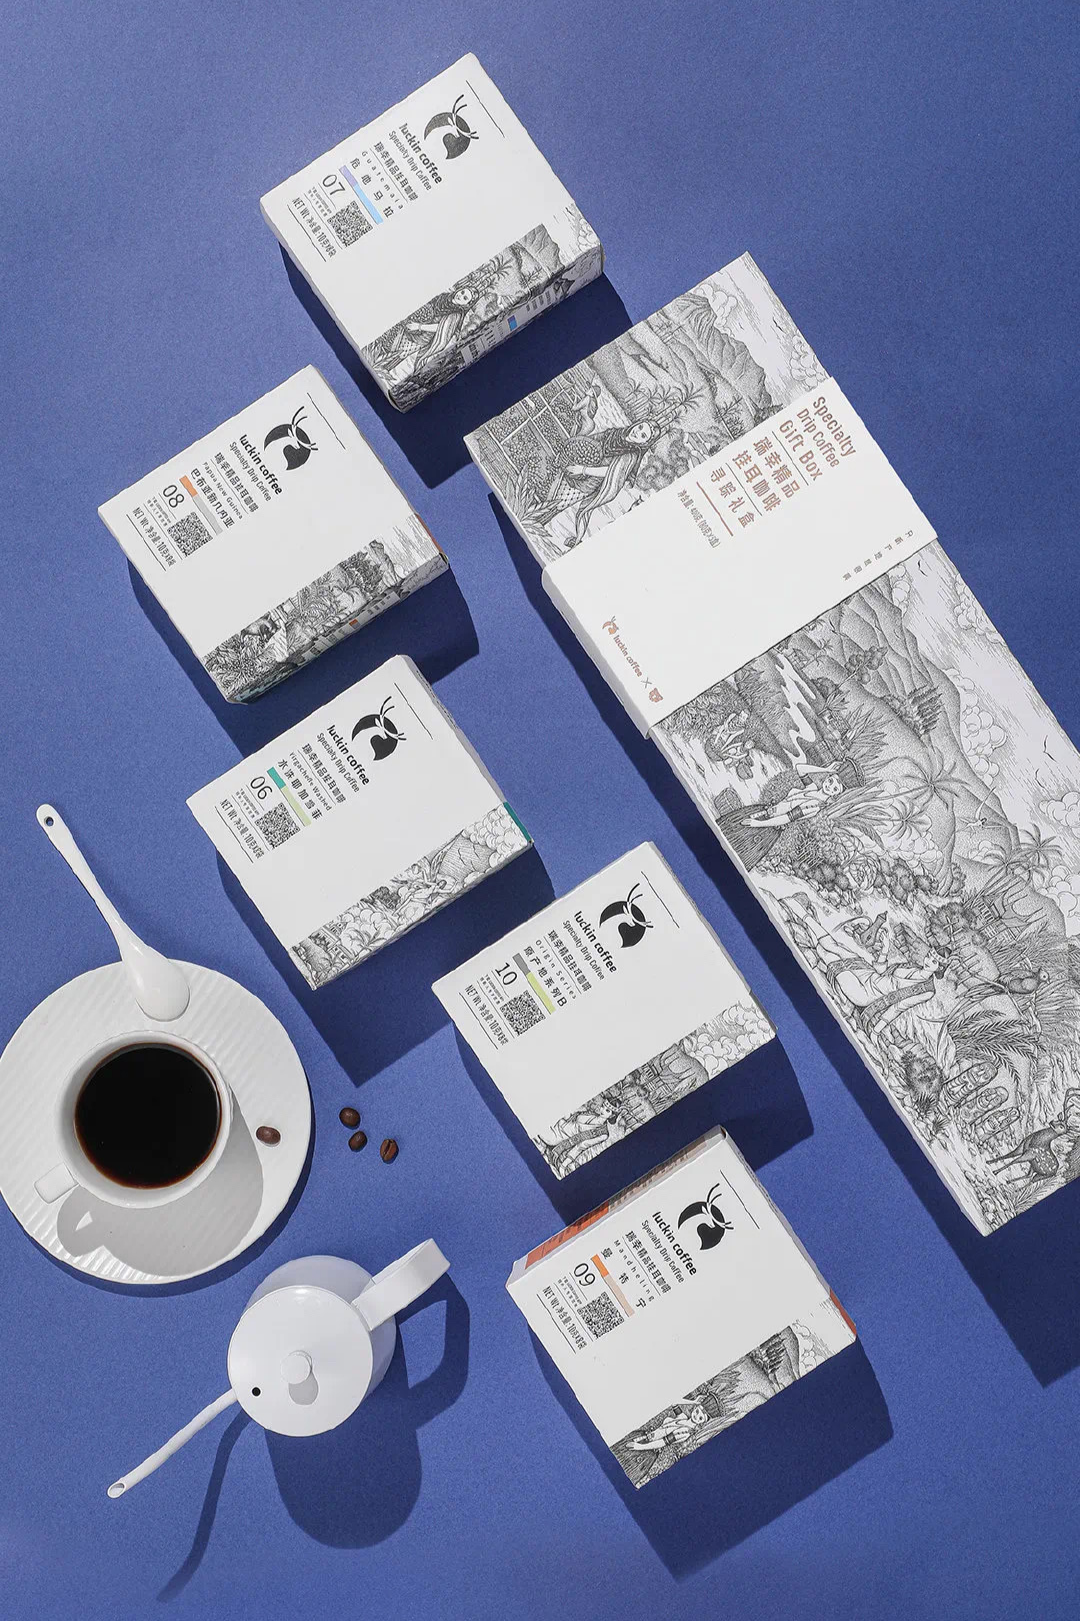 瑞幸咖啡与它的产品包装系列视觉体系创意 咖啡中的艺术家